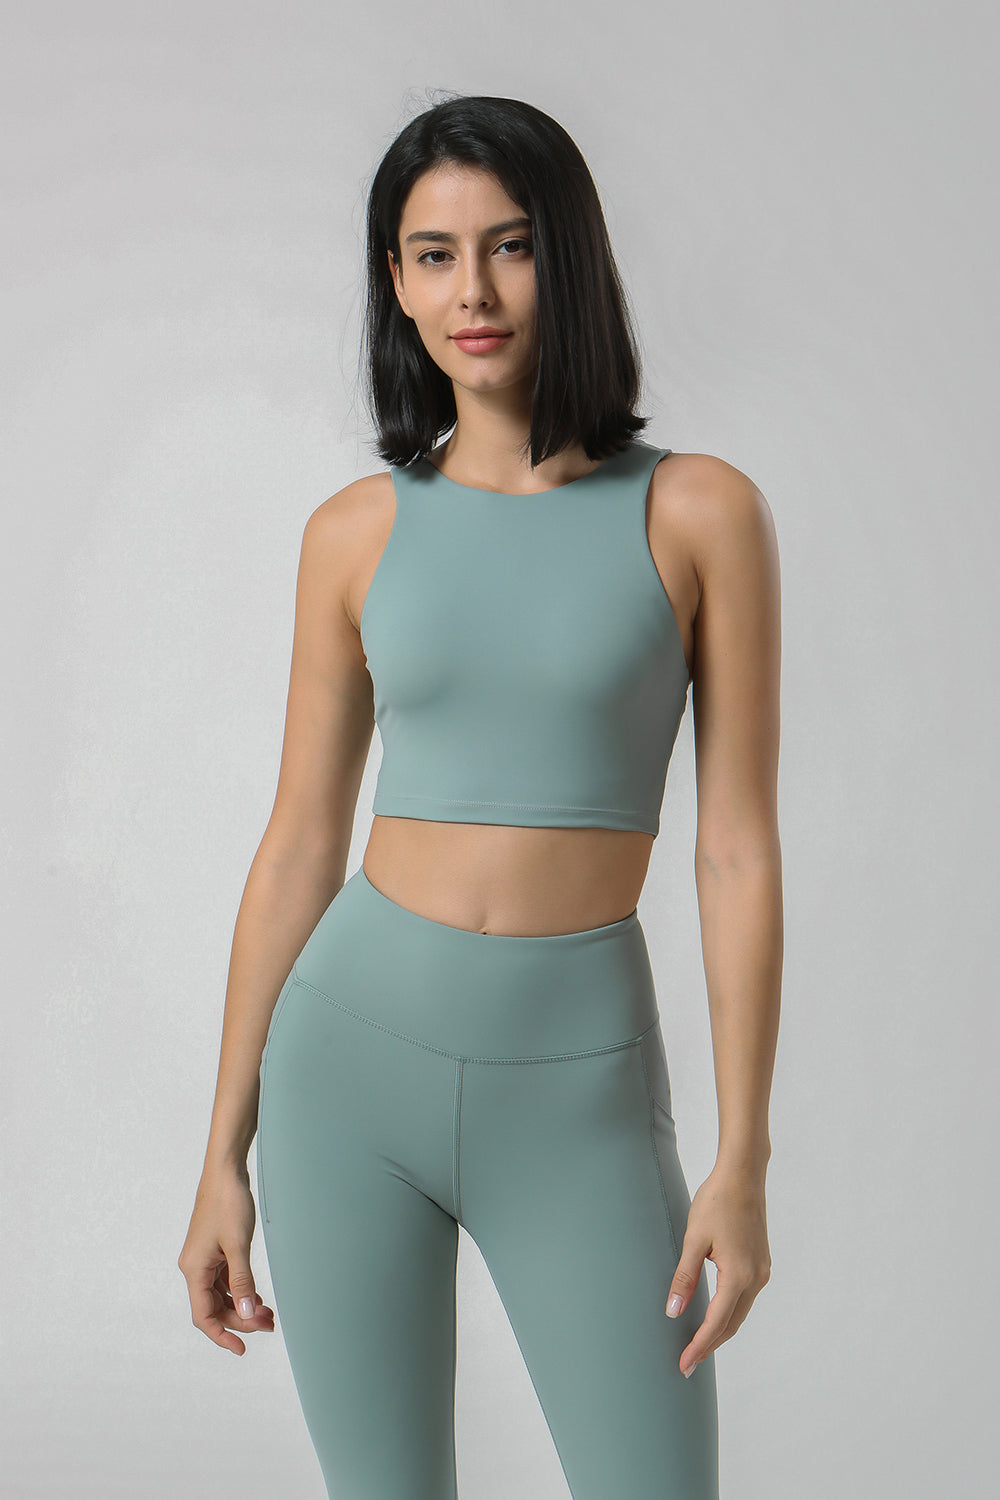 新款裸感瑜伽套装女 高腰口袋瑜伽健身套装 跑步运动休闲套装2113